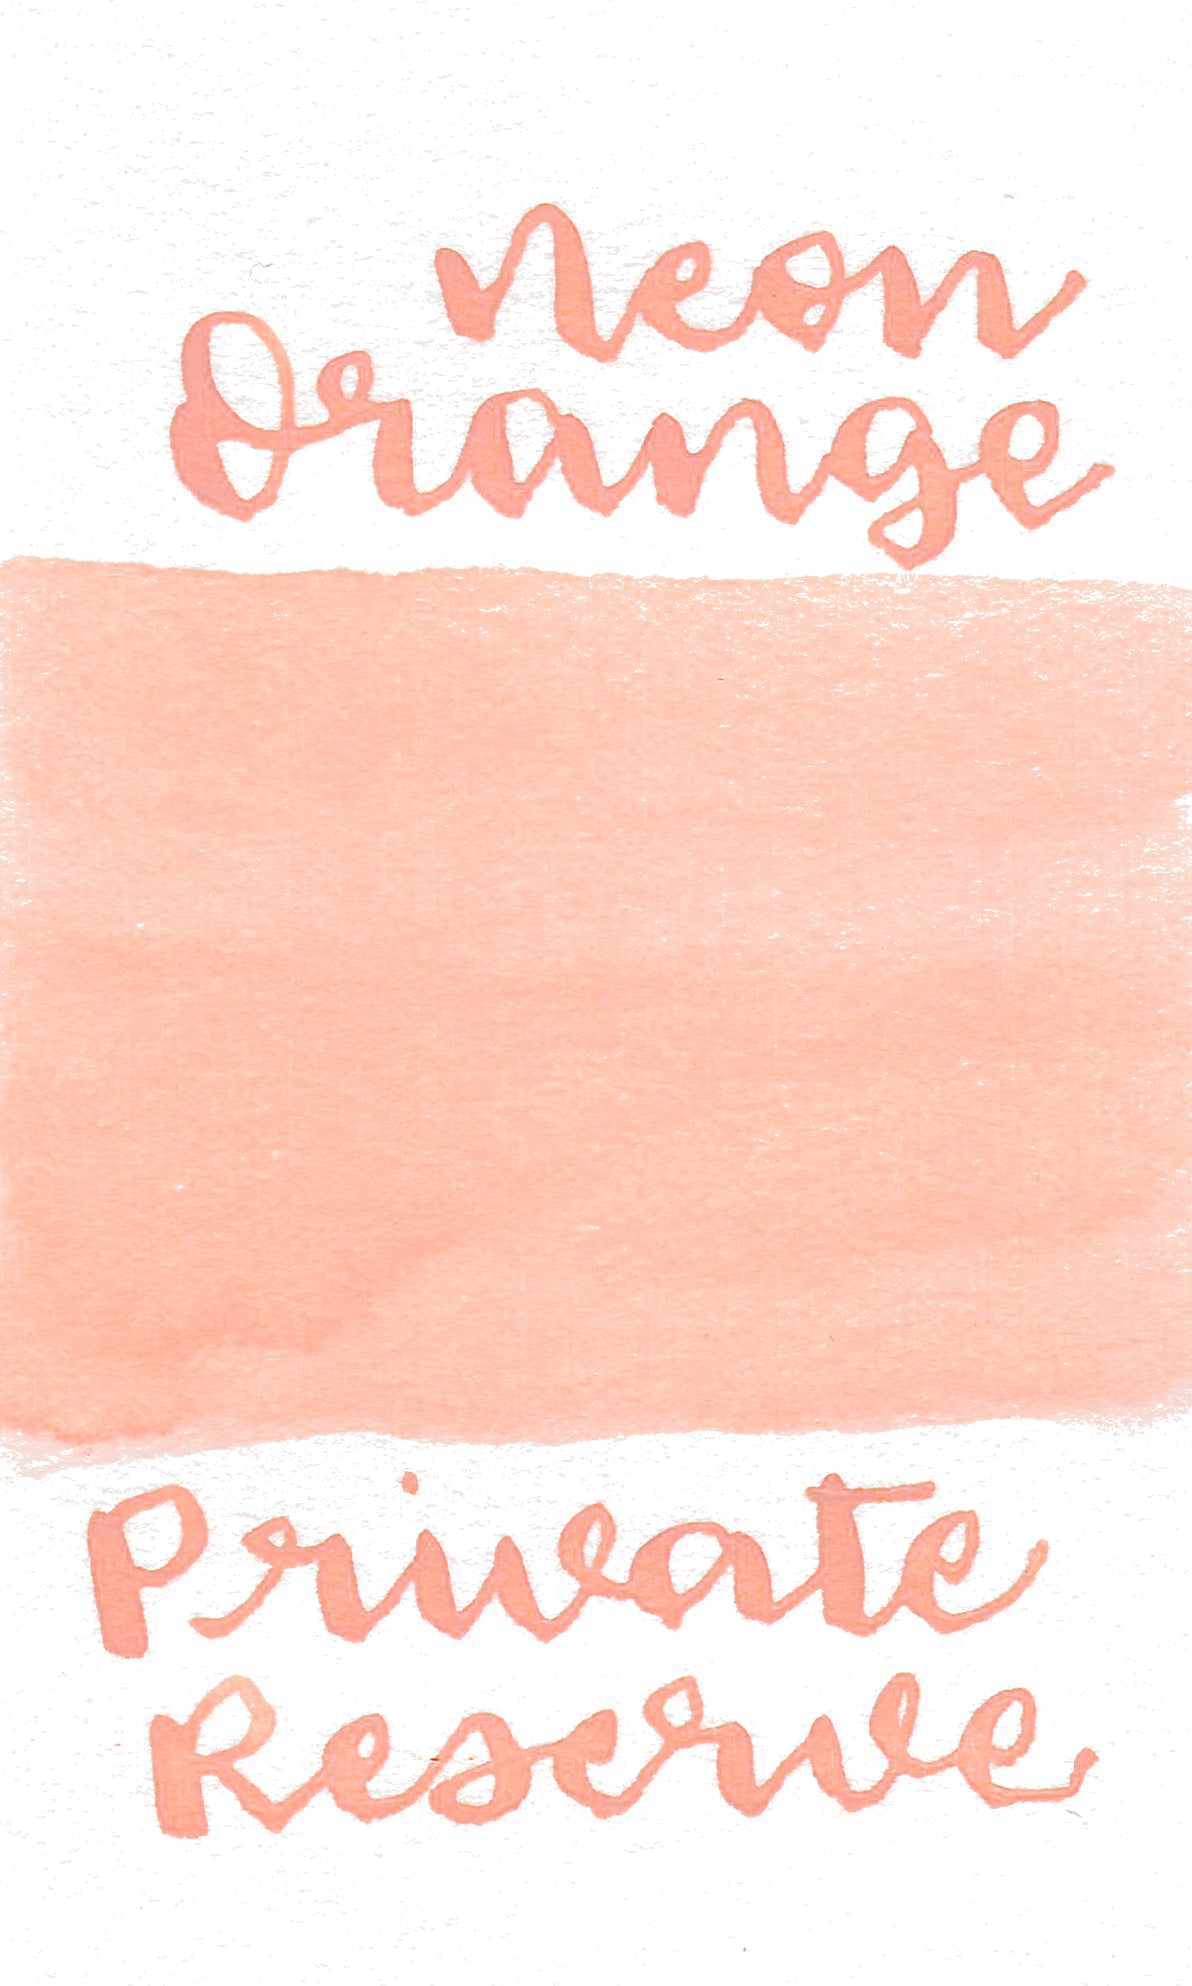 Private Reserve Neon - Orange